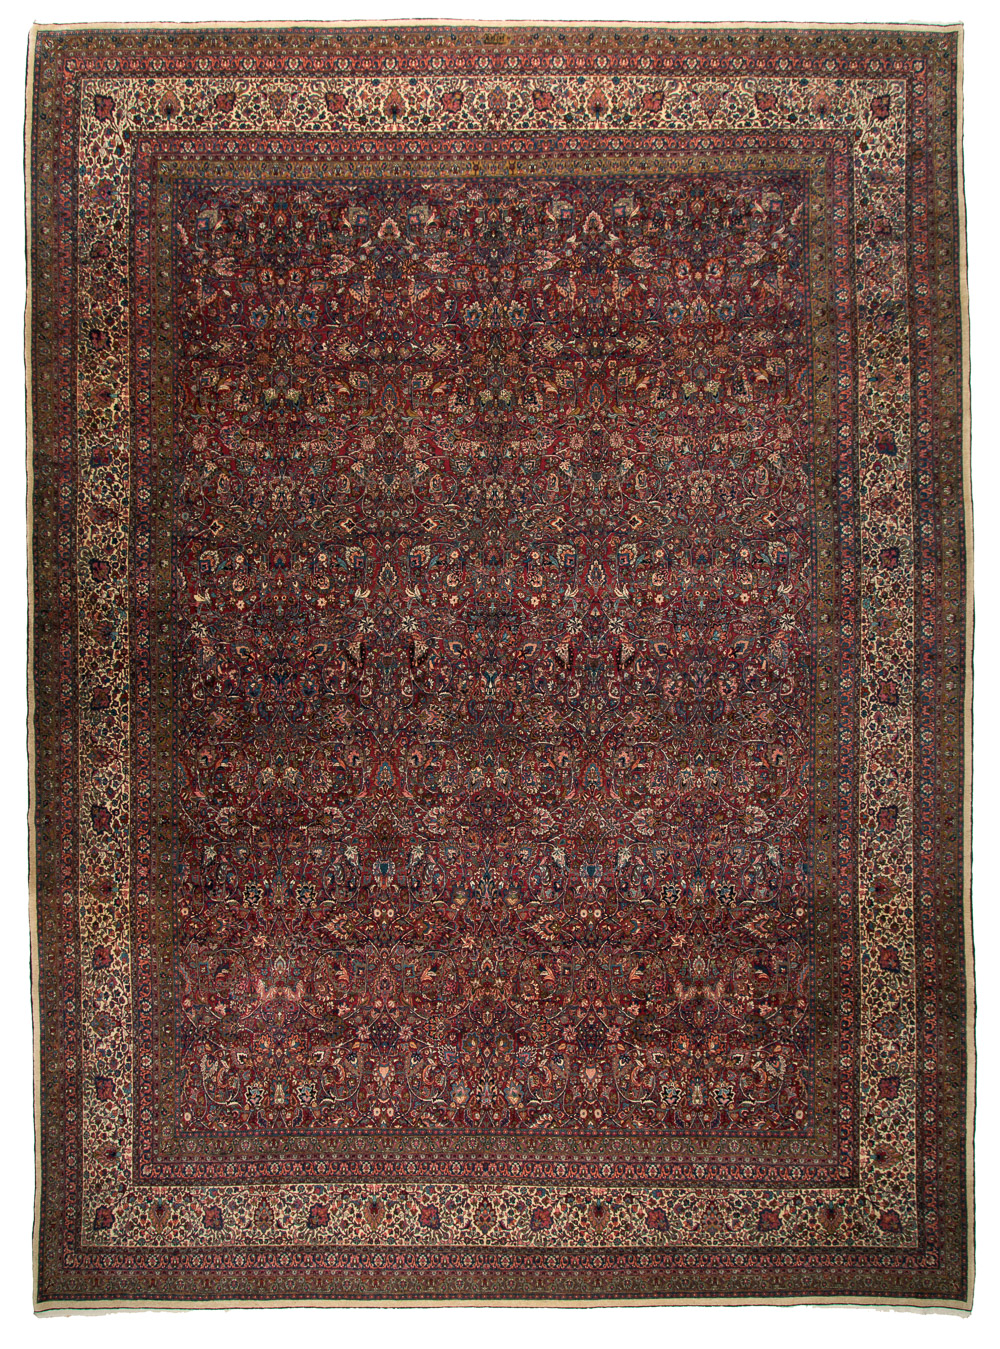 Signed Amoghli rug, Mashaad, 363 x 490 cm, Ramezani 